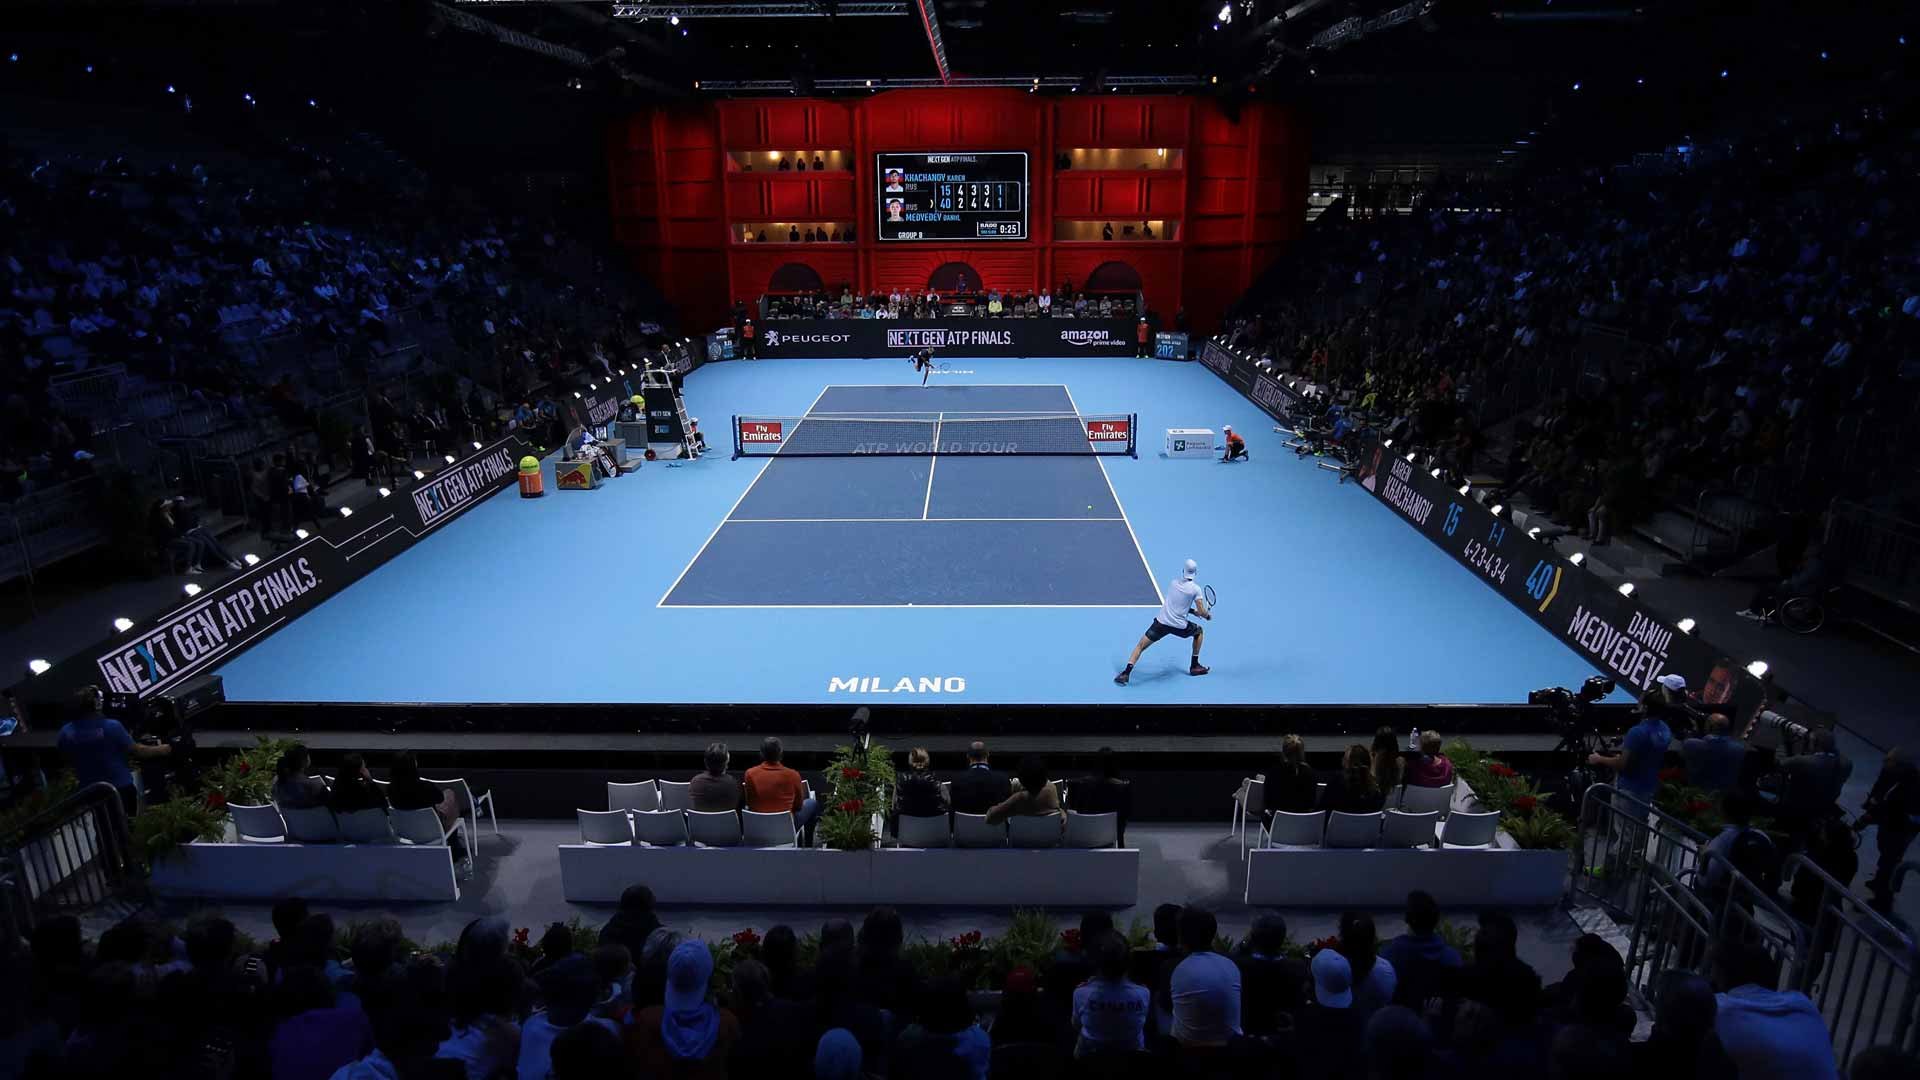 El sistema ELC Live fue puesto a prueba por primera vez en las Next Gen ATP Finals 2017 en Milán.